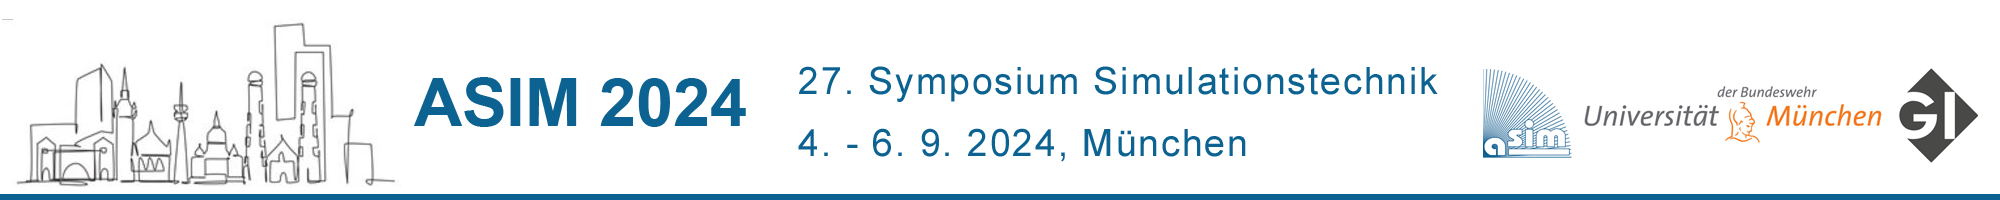 ASIM Symposium Simulationstechnik 2024